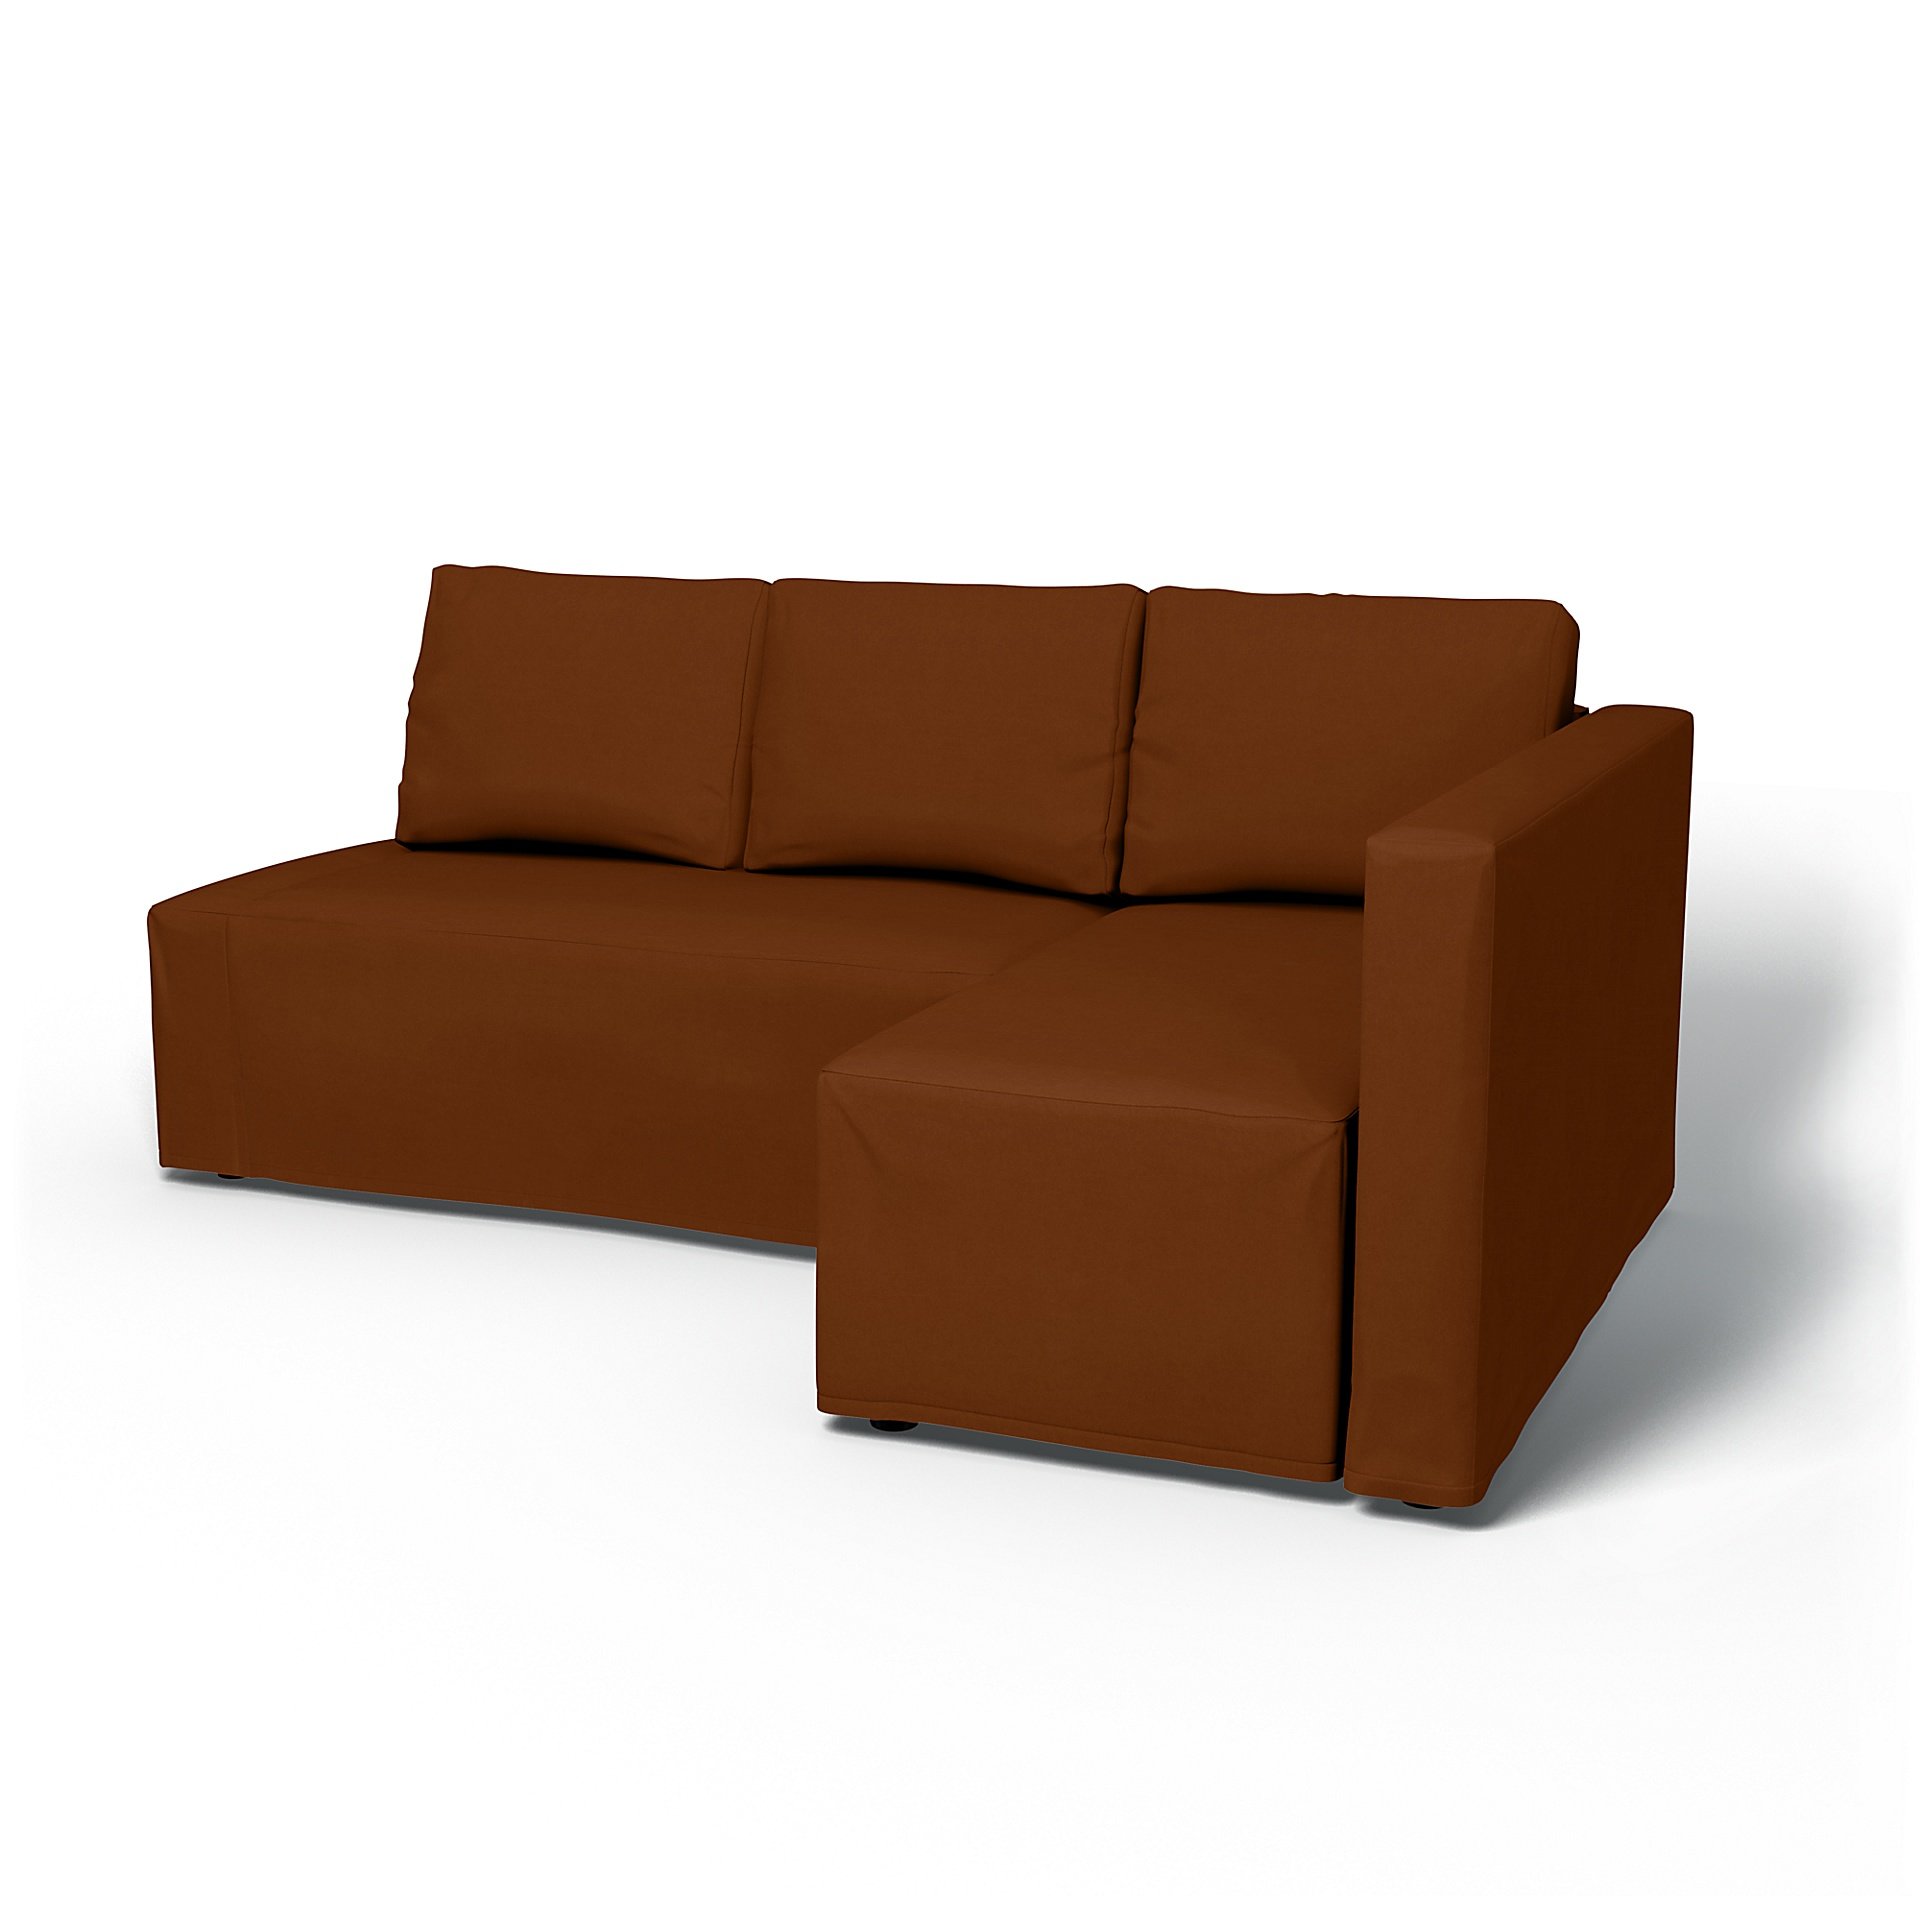 IKEA - Friheten Sofa Bed with Right Chaise Cover, Cinnamon, Velvet - Bemz